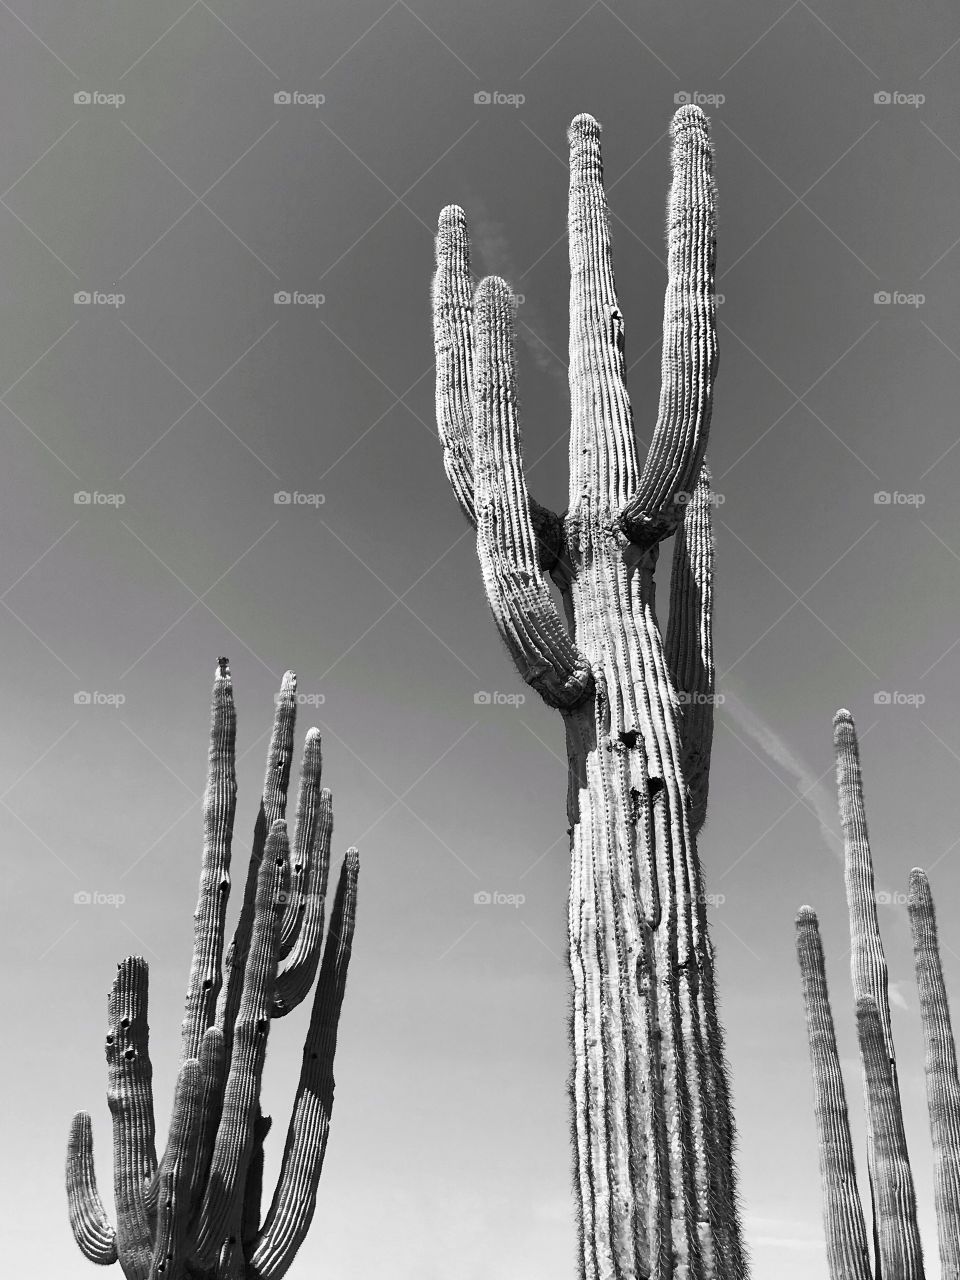 Saguaro cacti in Arizona 